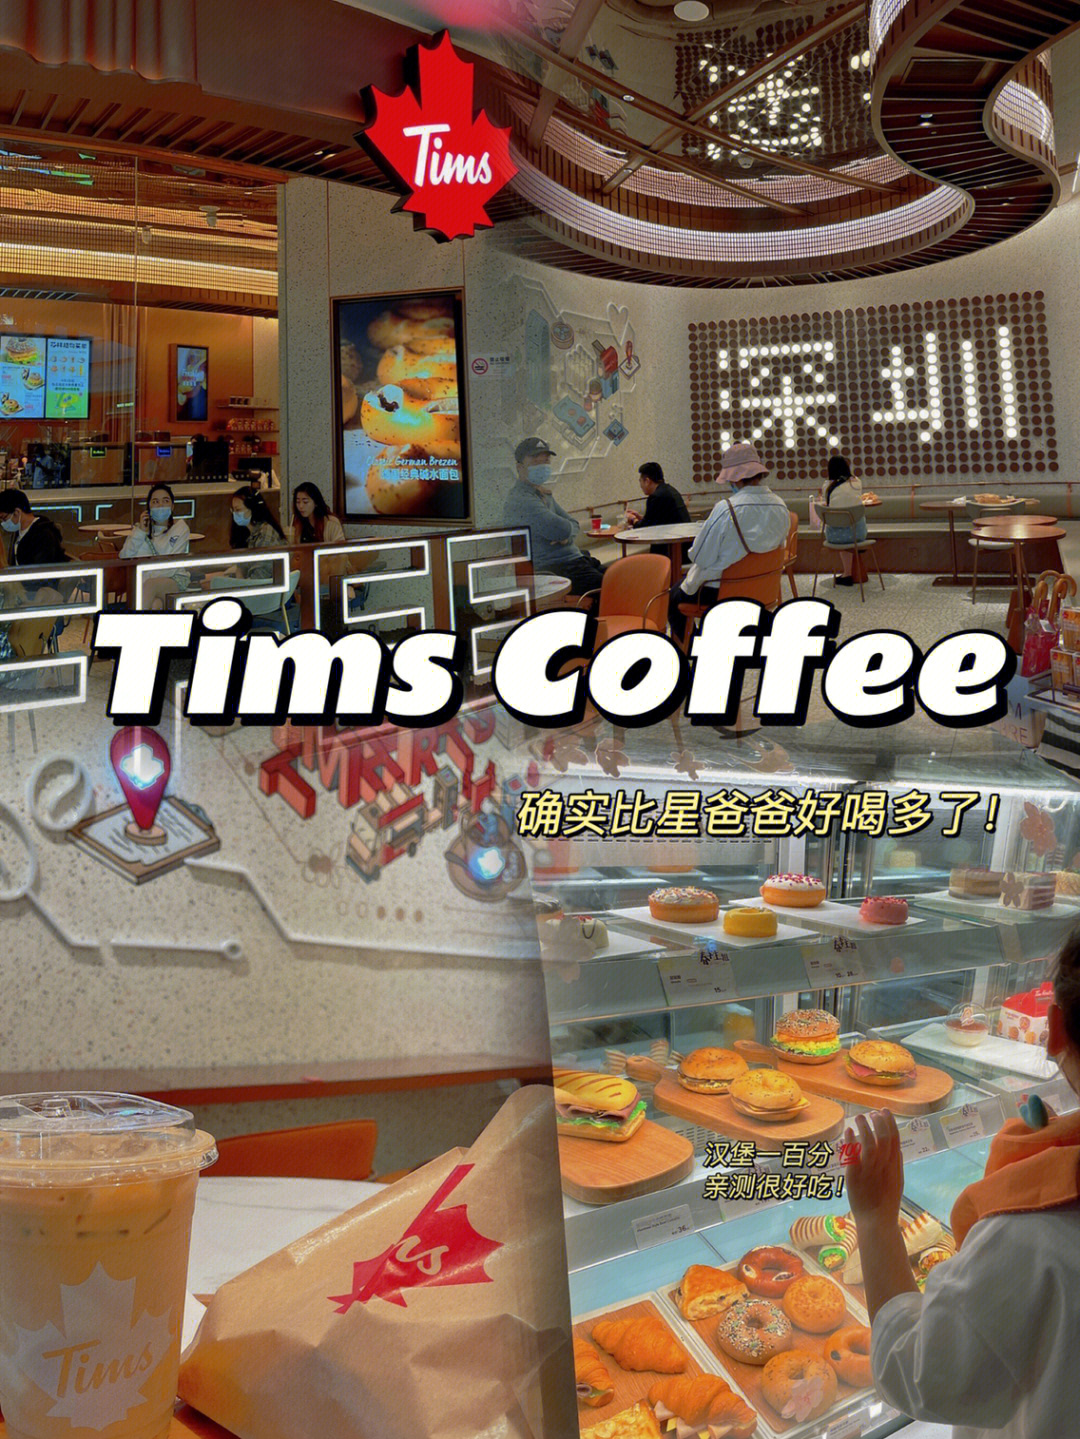 tims咖啡菜单图片